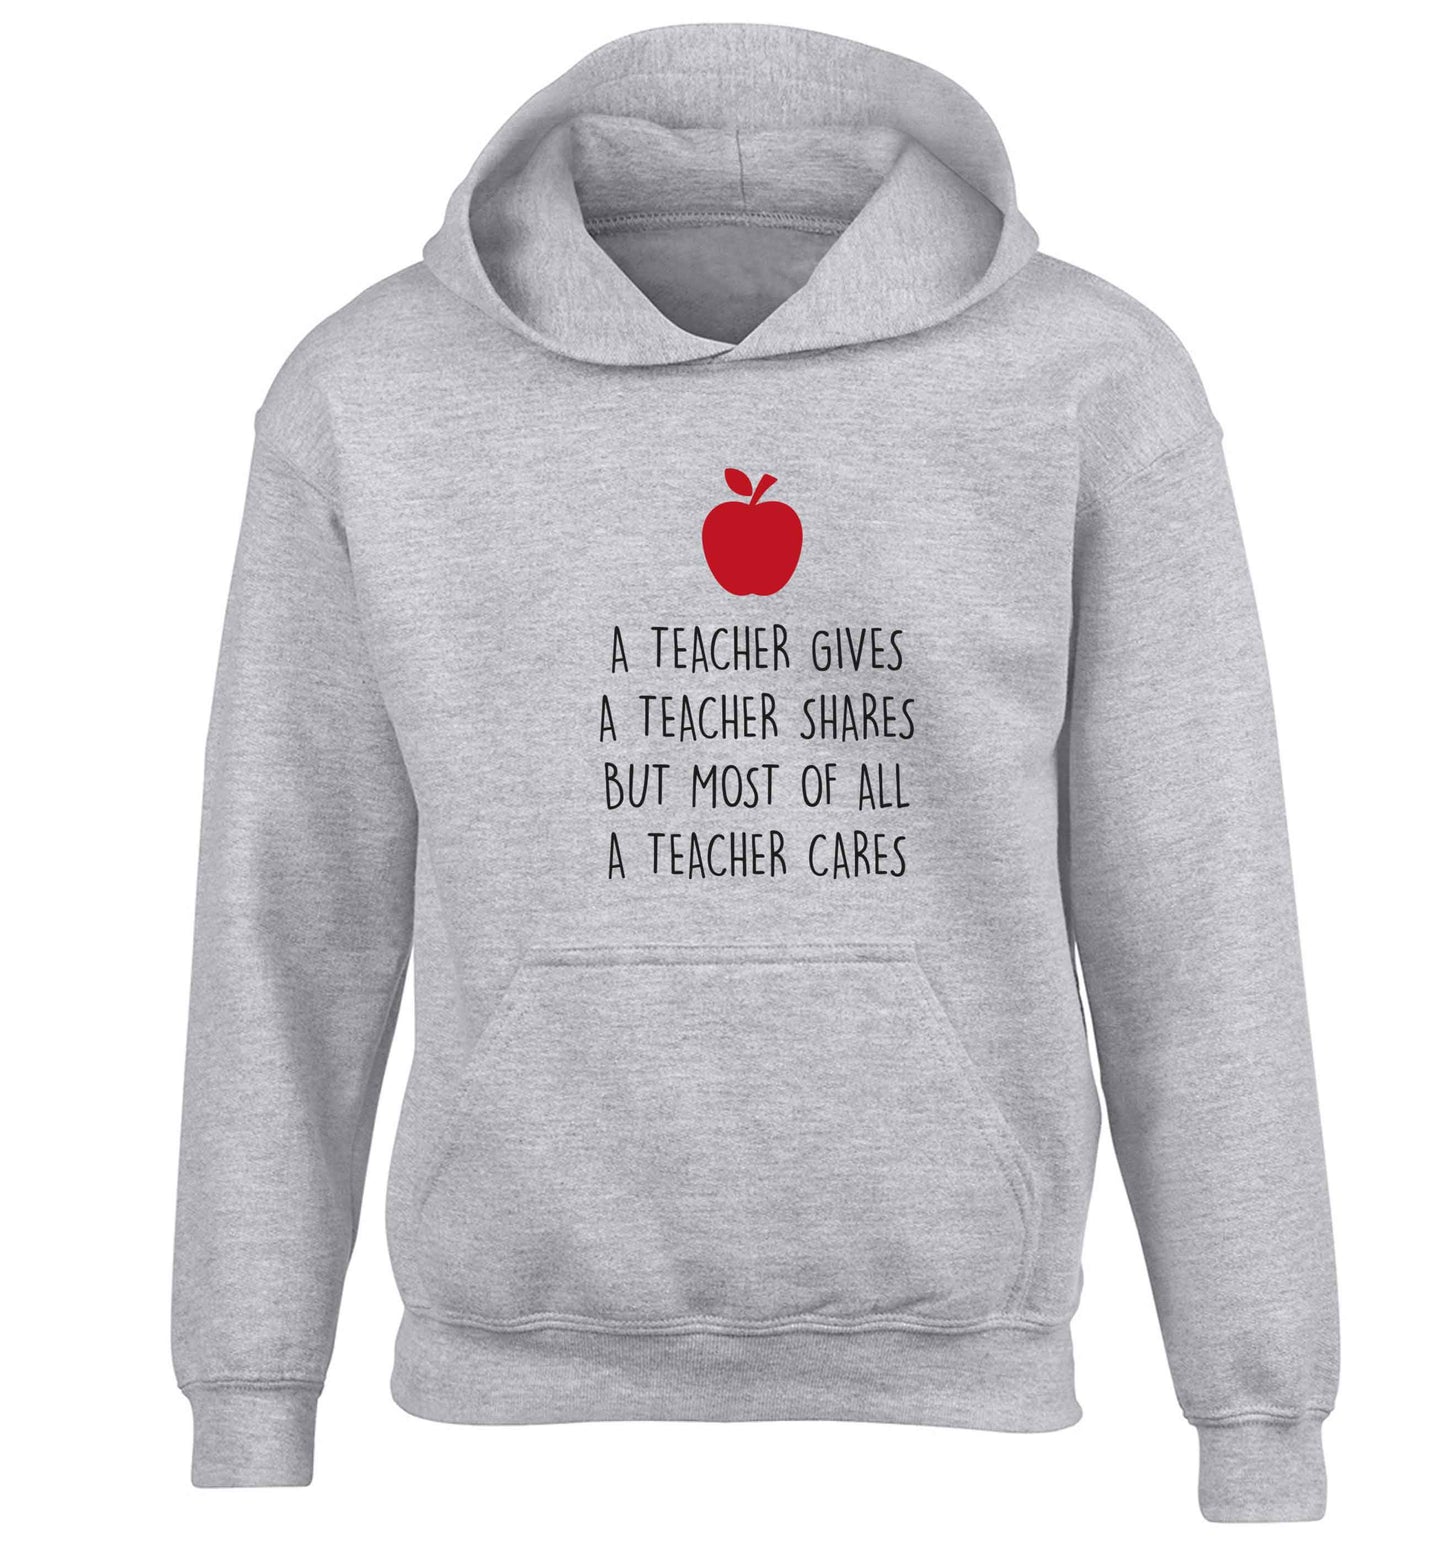 A teacher gives a teacher shares but most of all a teacher cares children's grey hoodie 12-13 Years